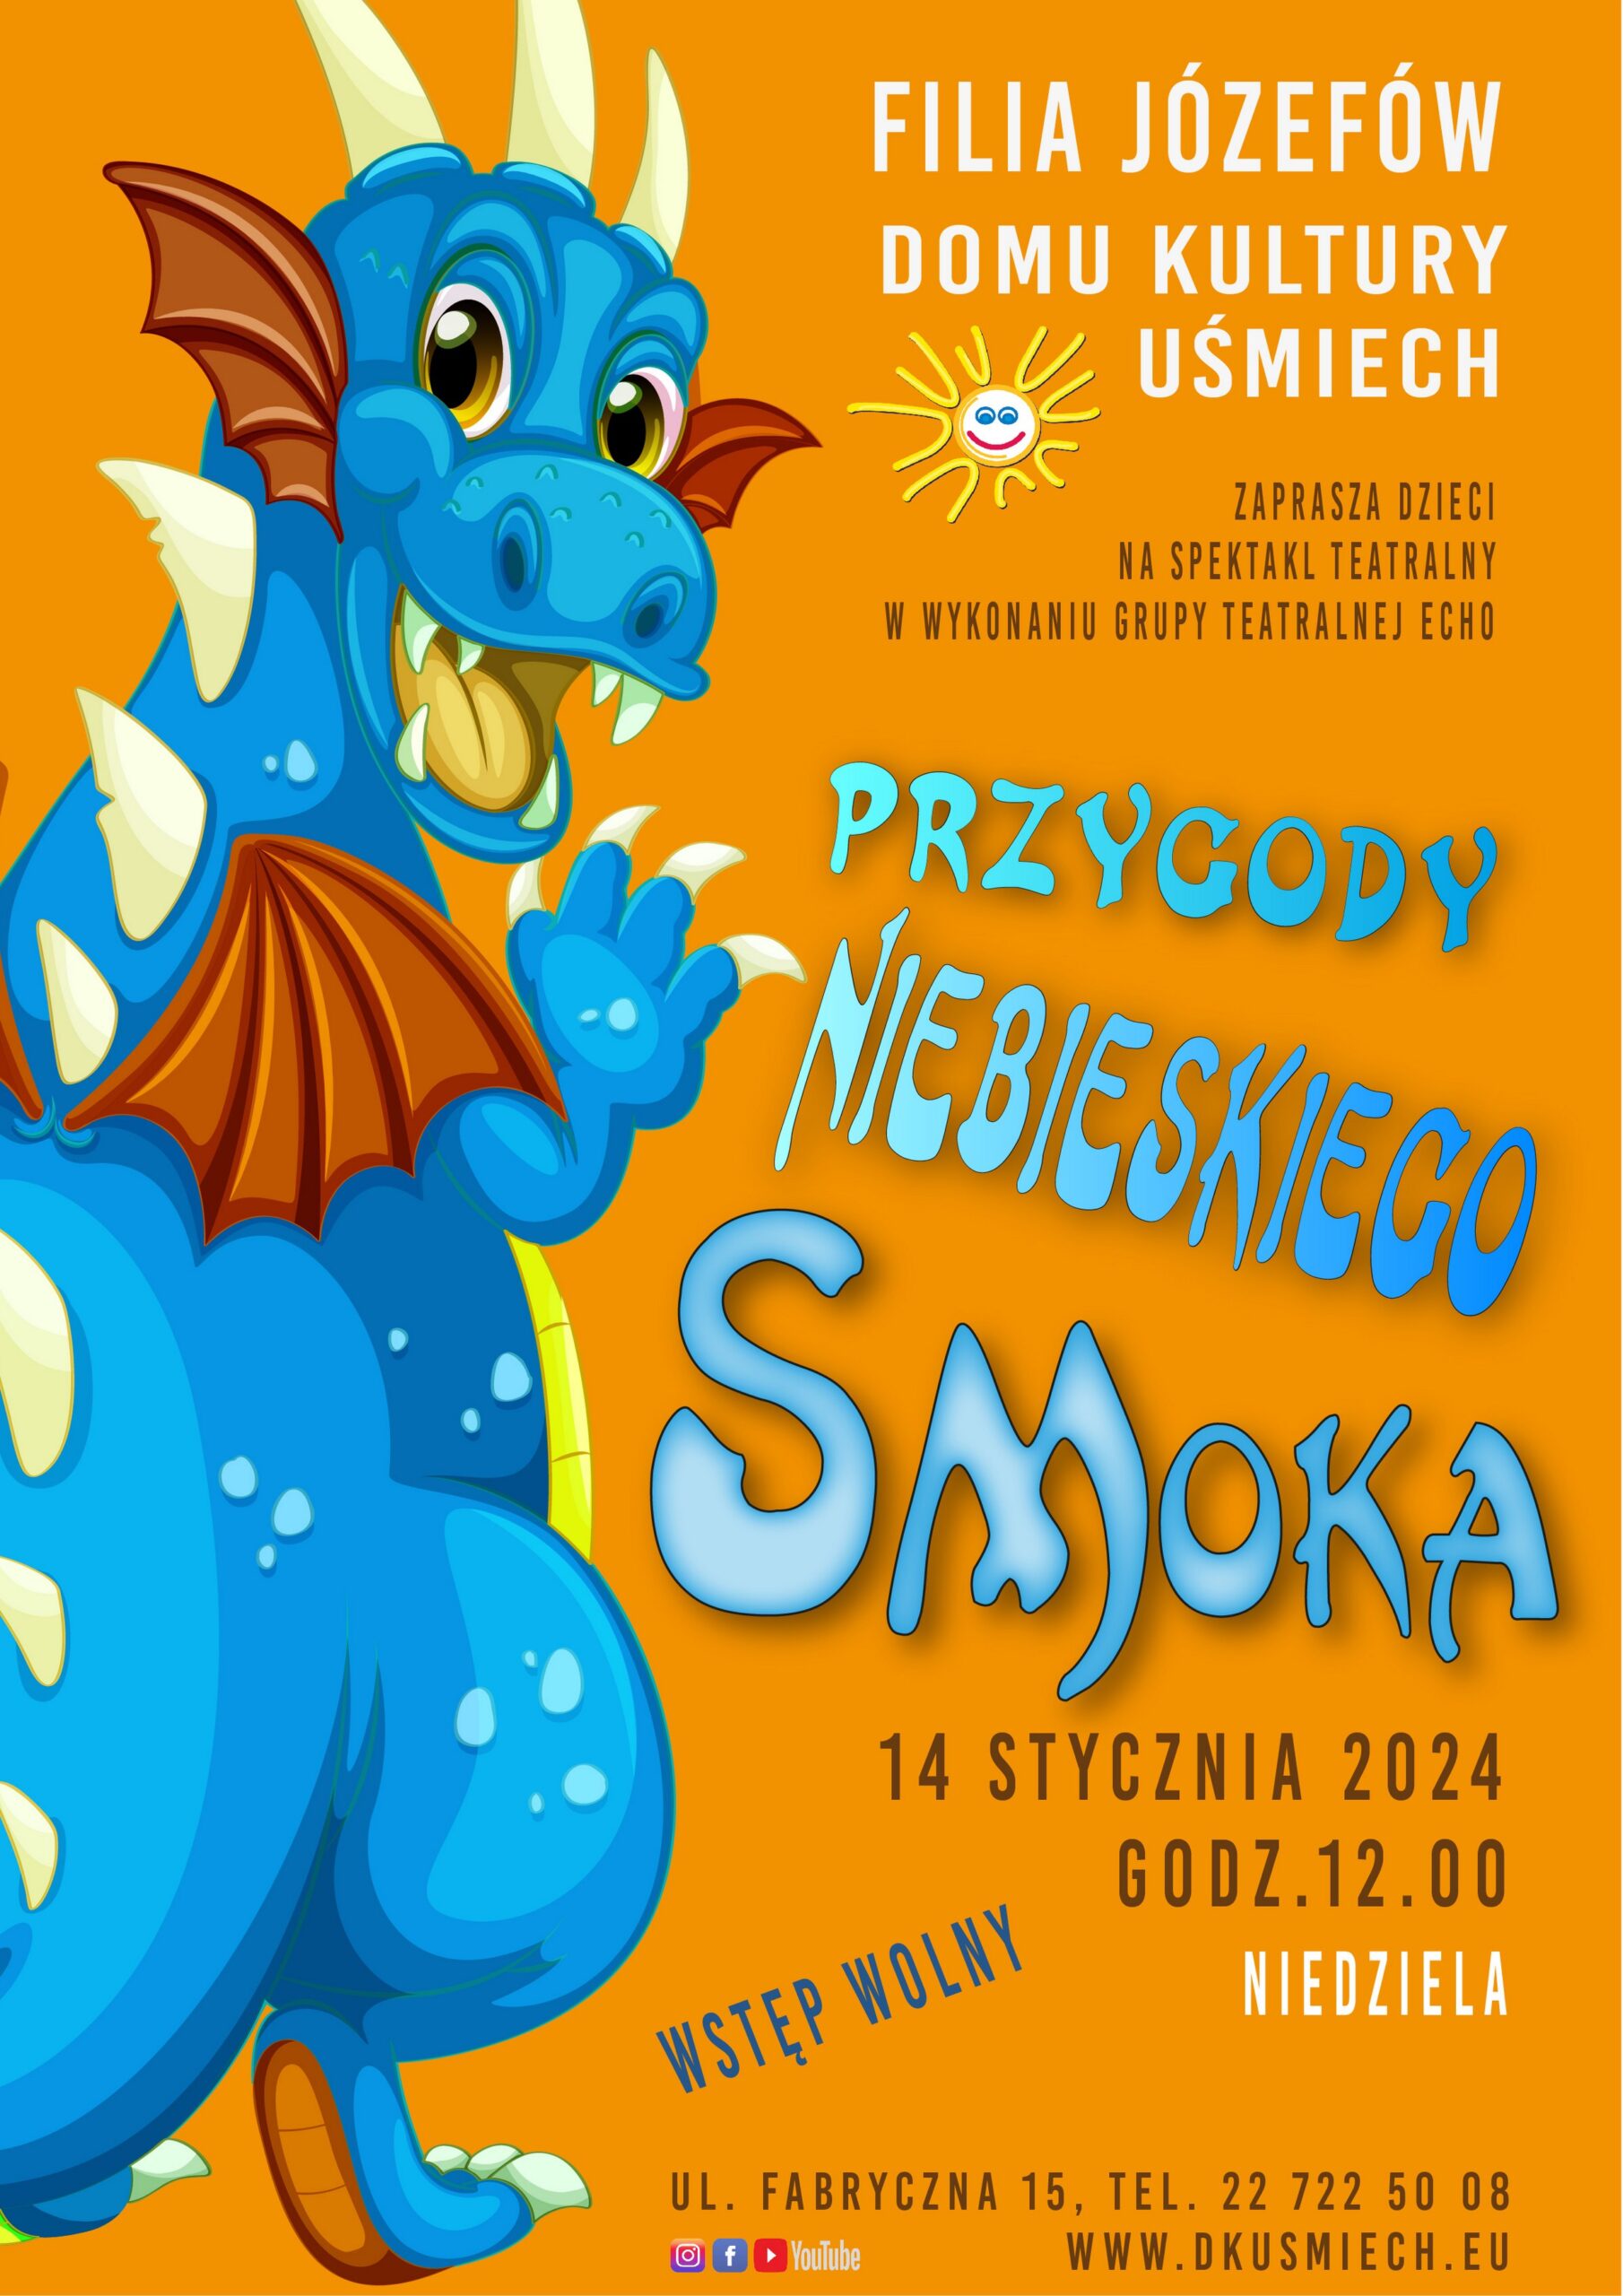 Plakat promujący przedstawienie teatralne dla dzieci pt. Przygody niebieskiego smoka. 14 stycznia godzina 12.00